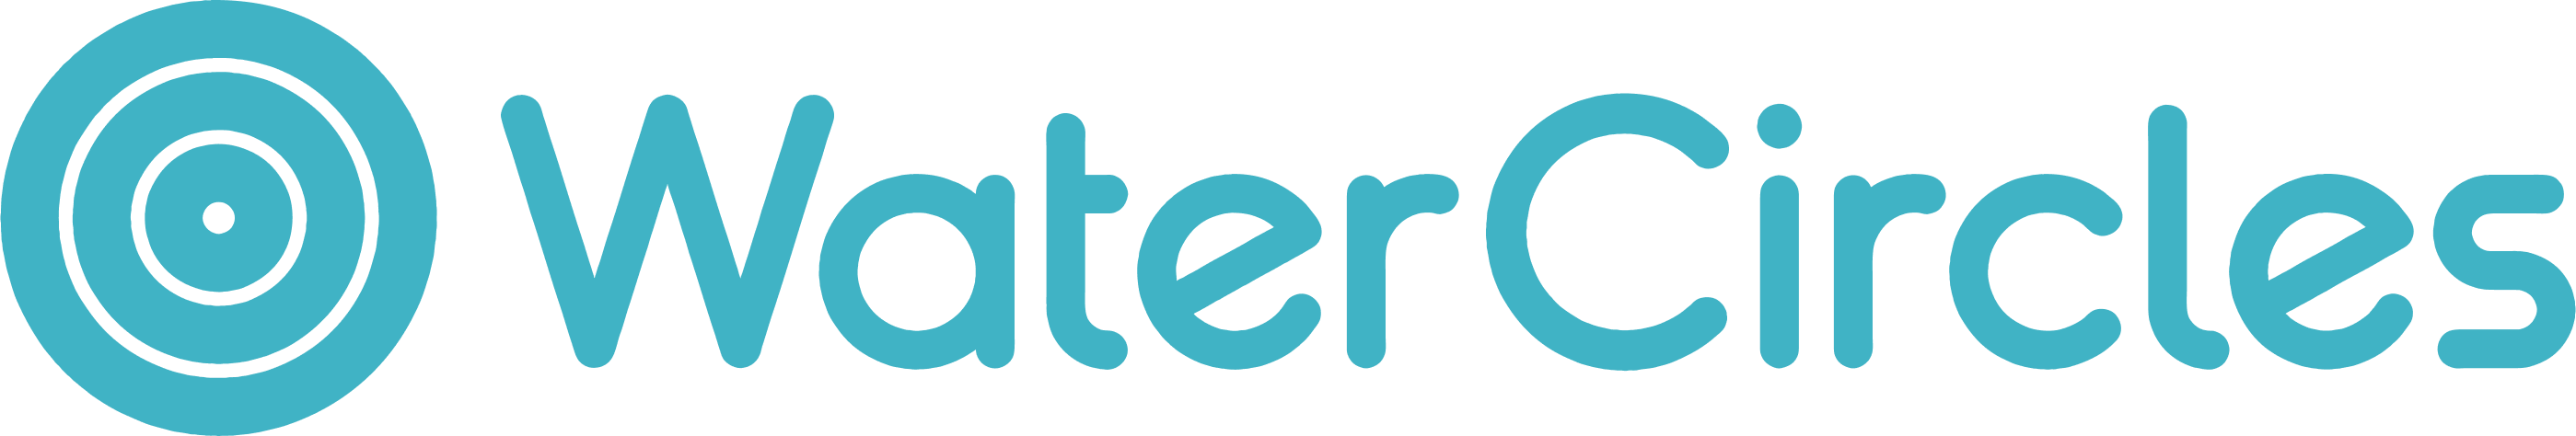 WaterCircles logo